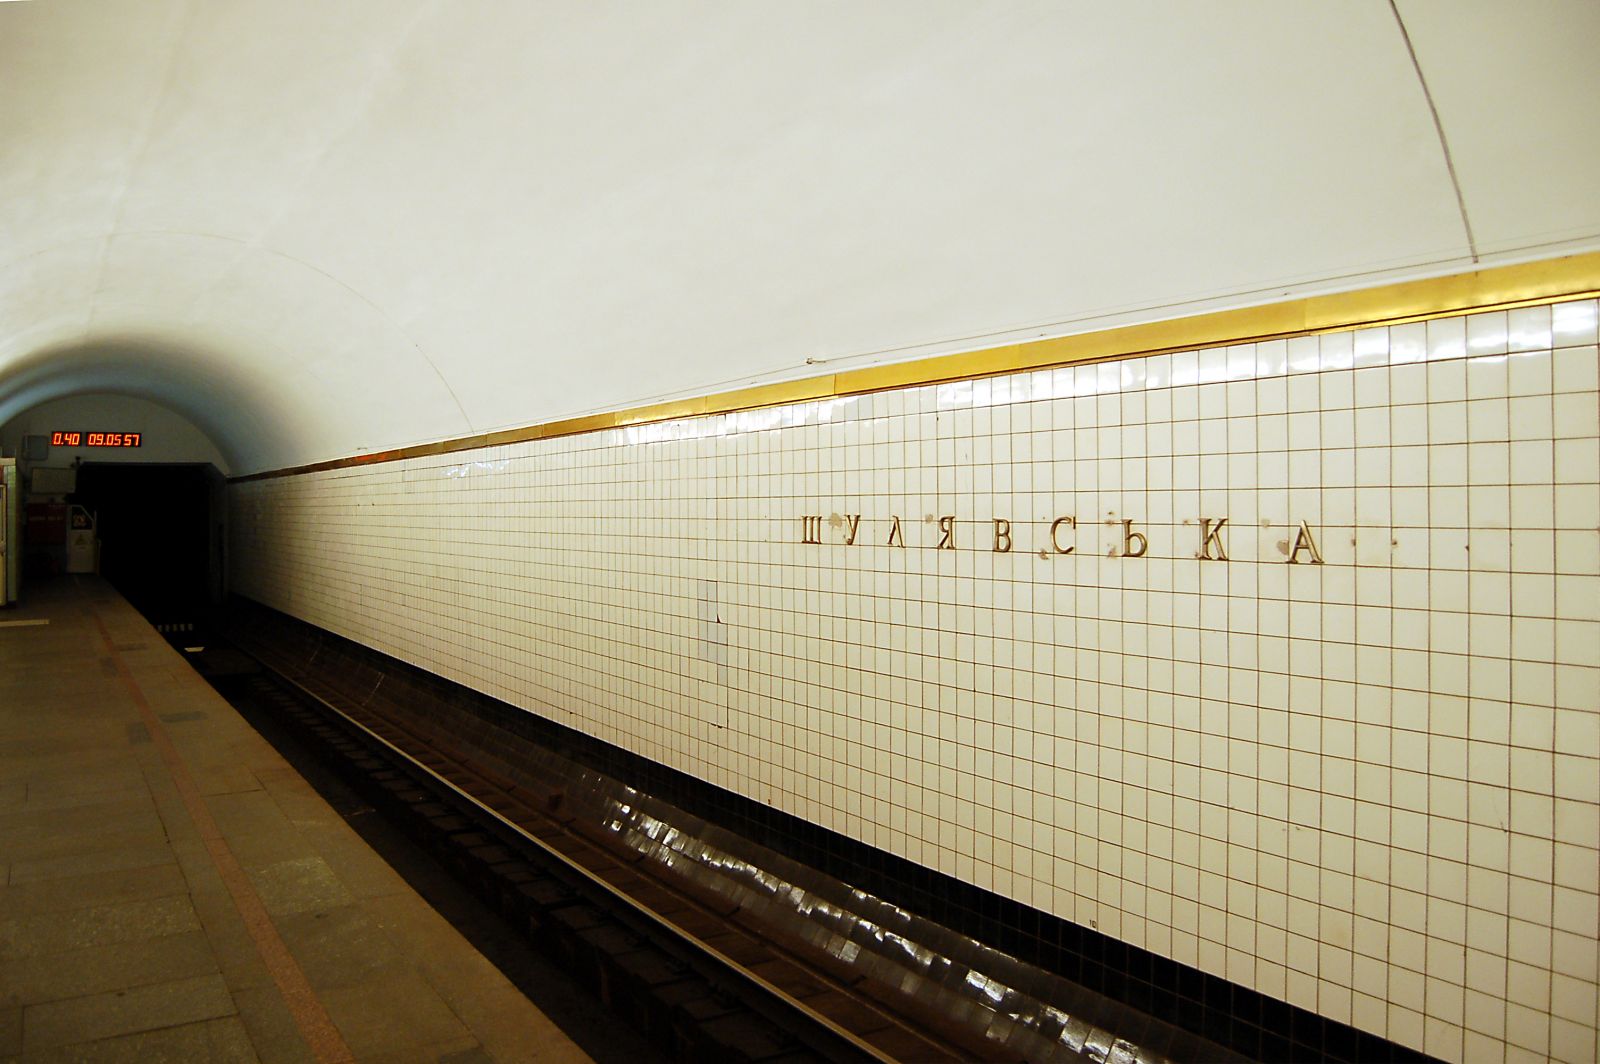 Станцию метро "Шулявская" предложили переименовать